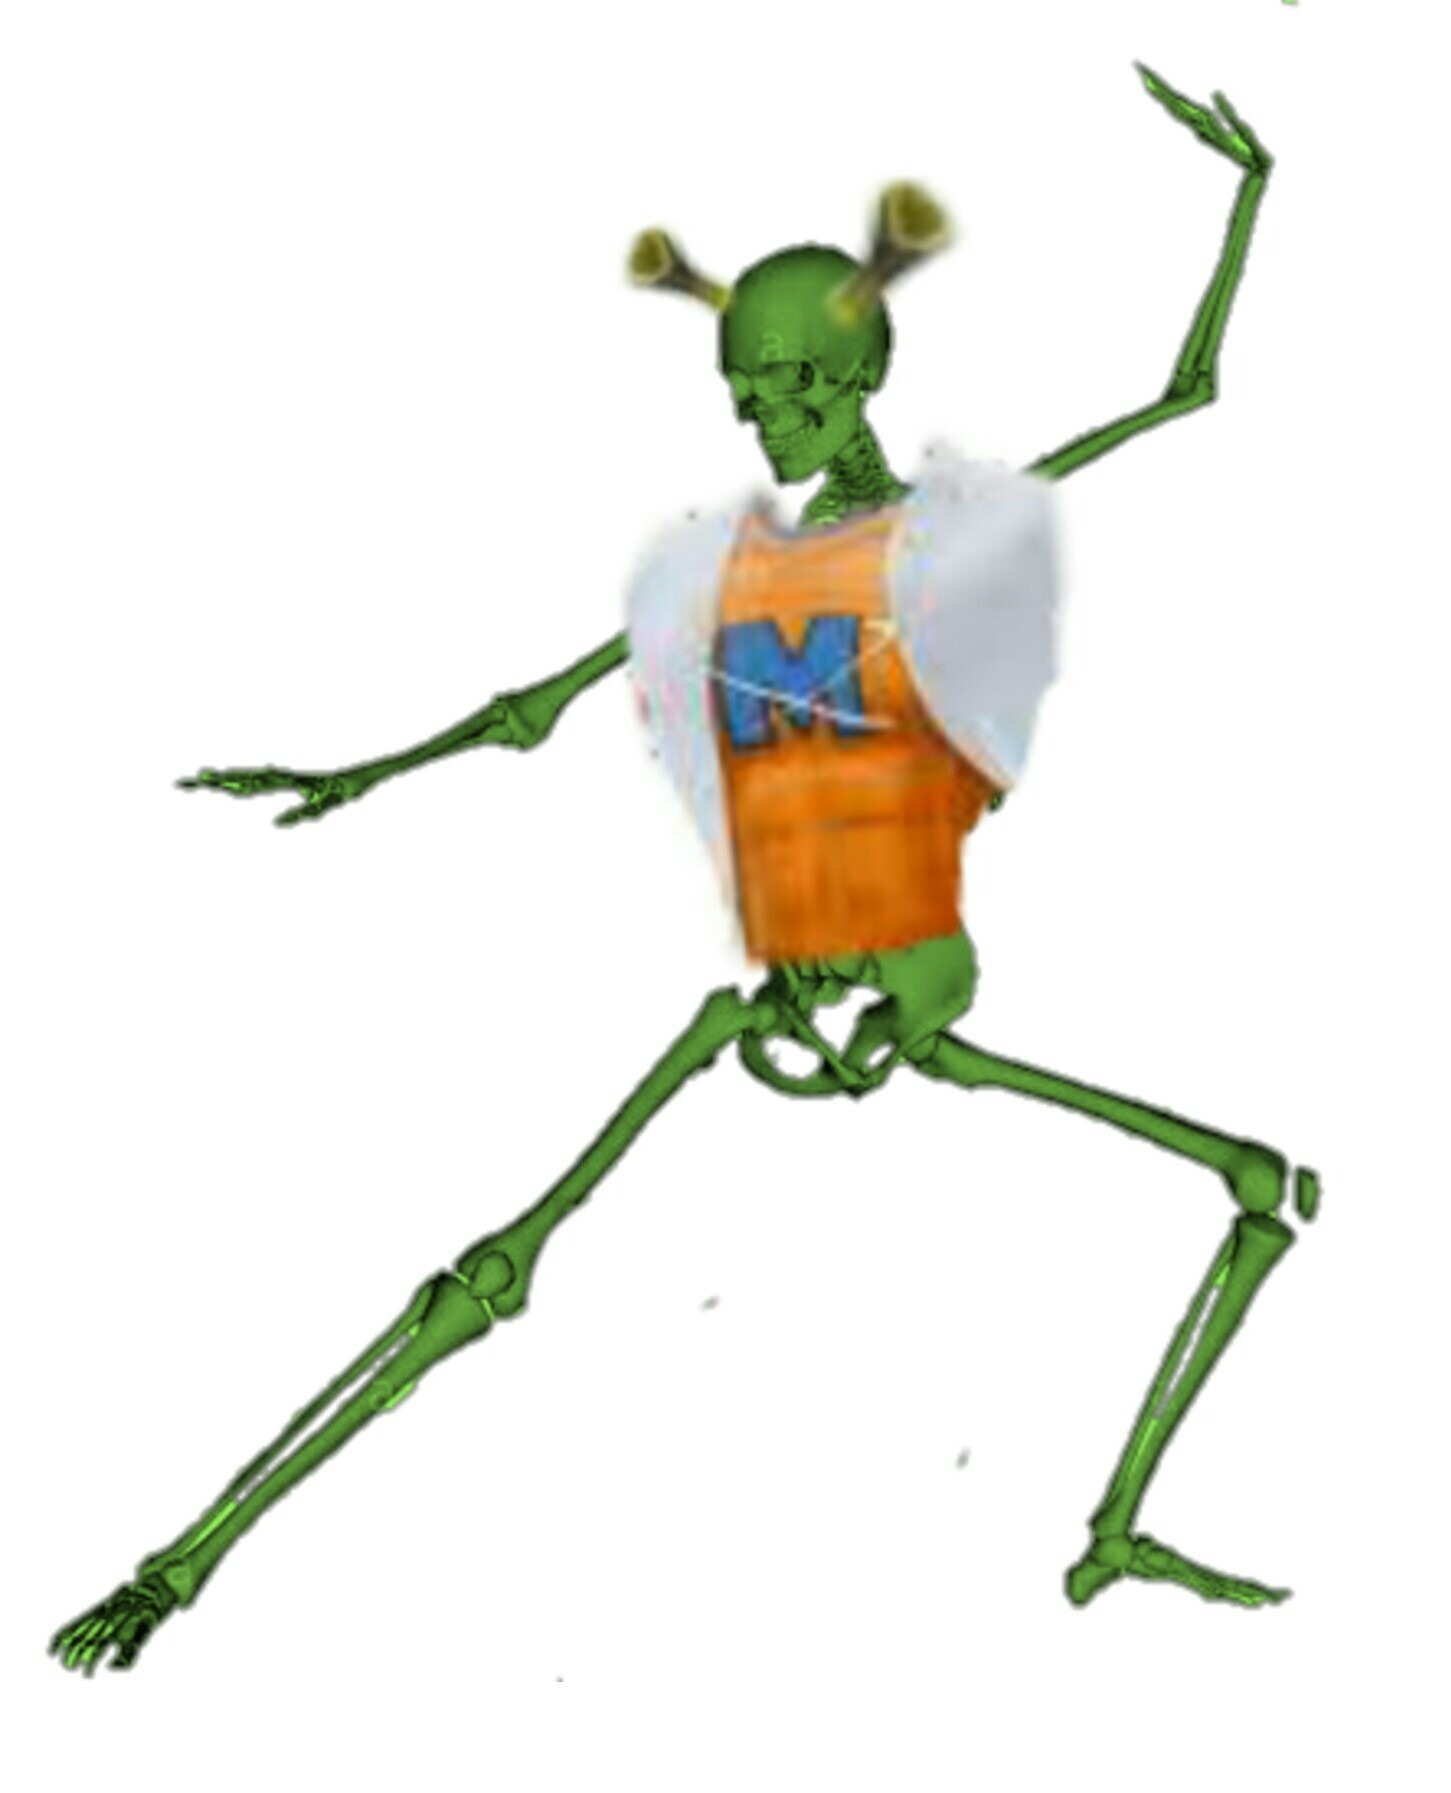 Esqueleto anti-Furros, otakus y grasosos - meme